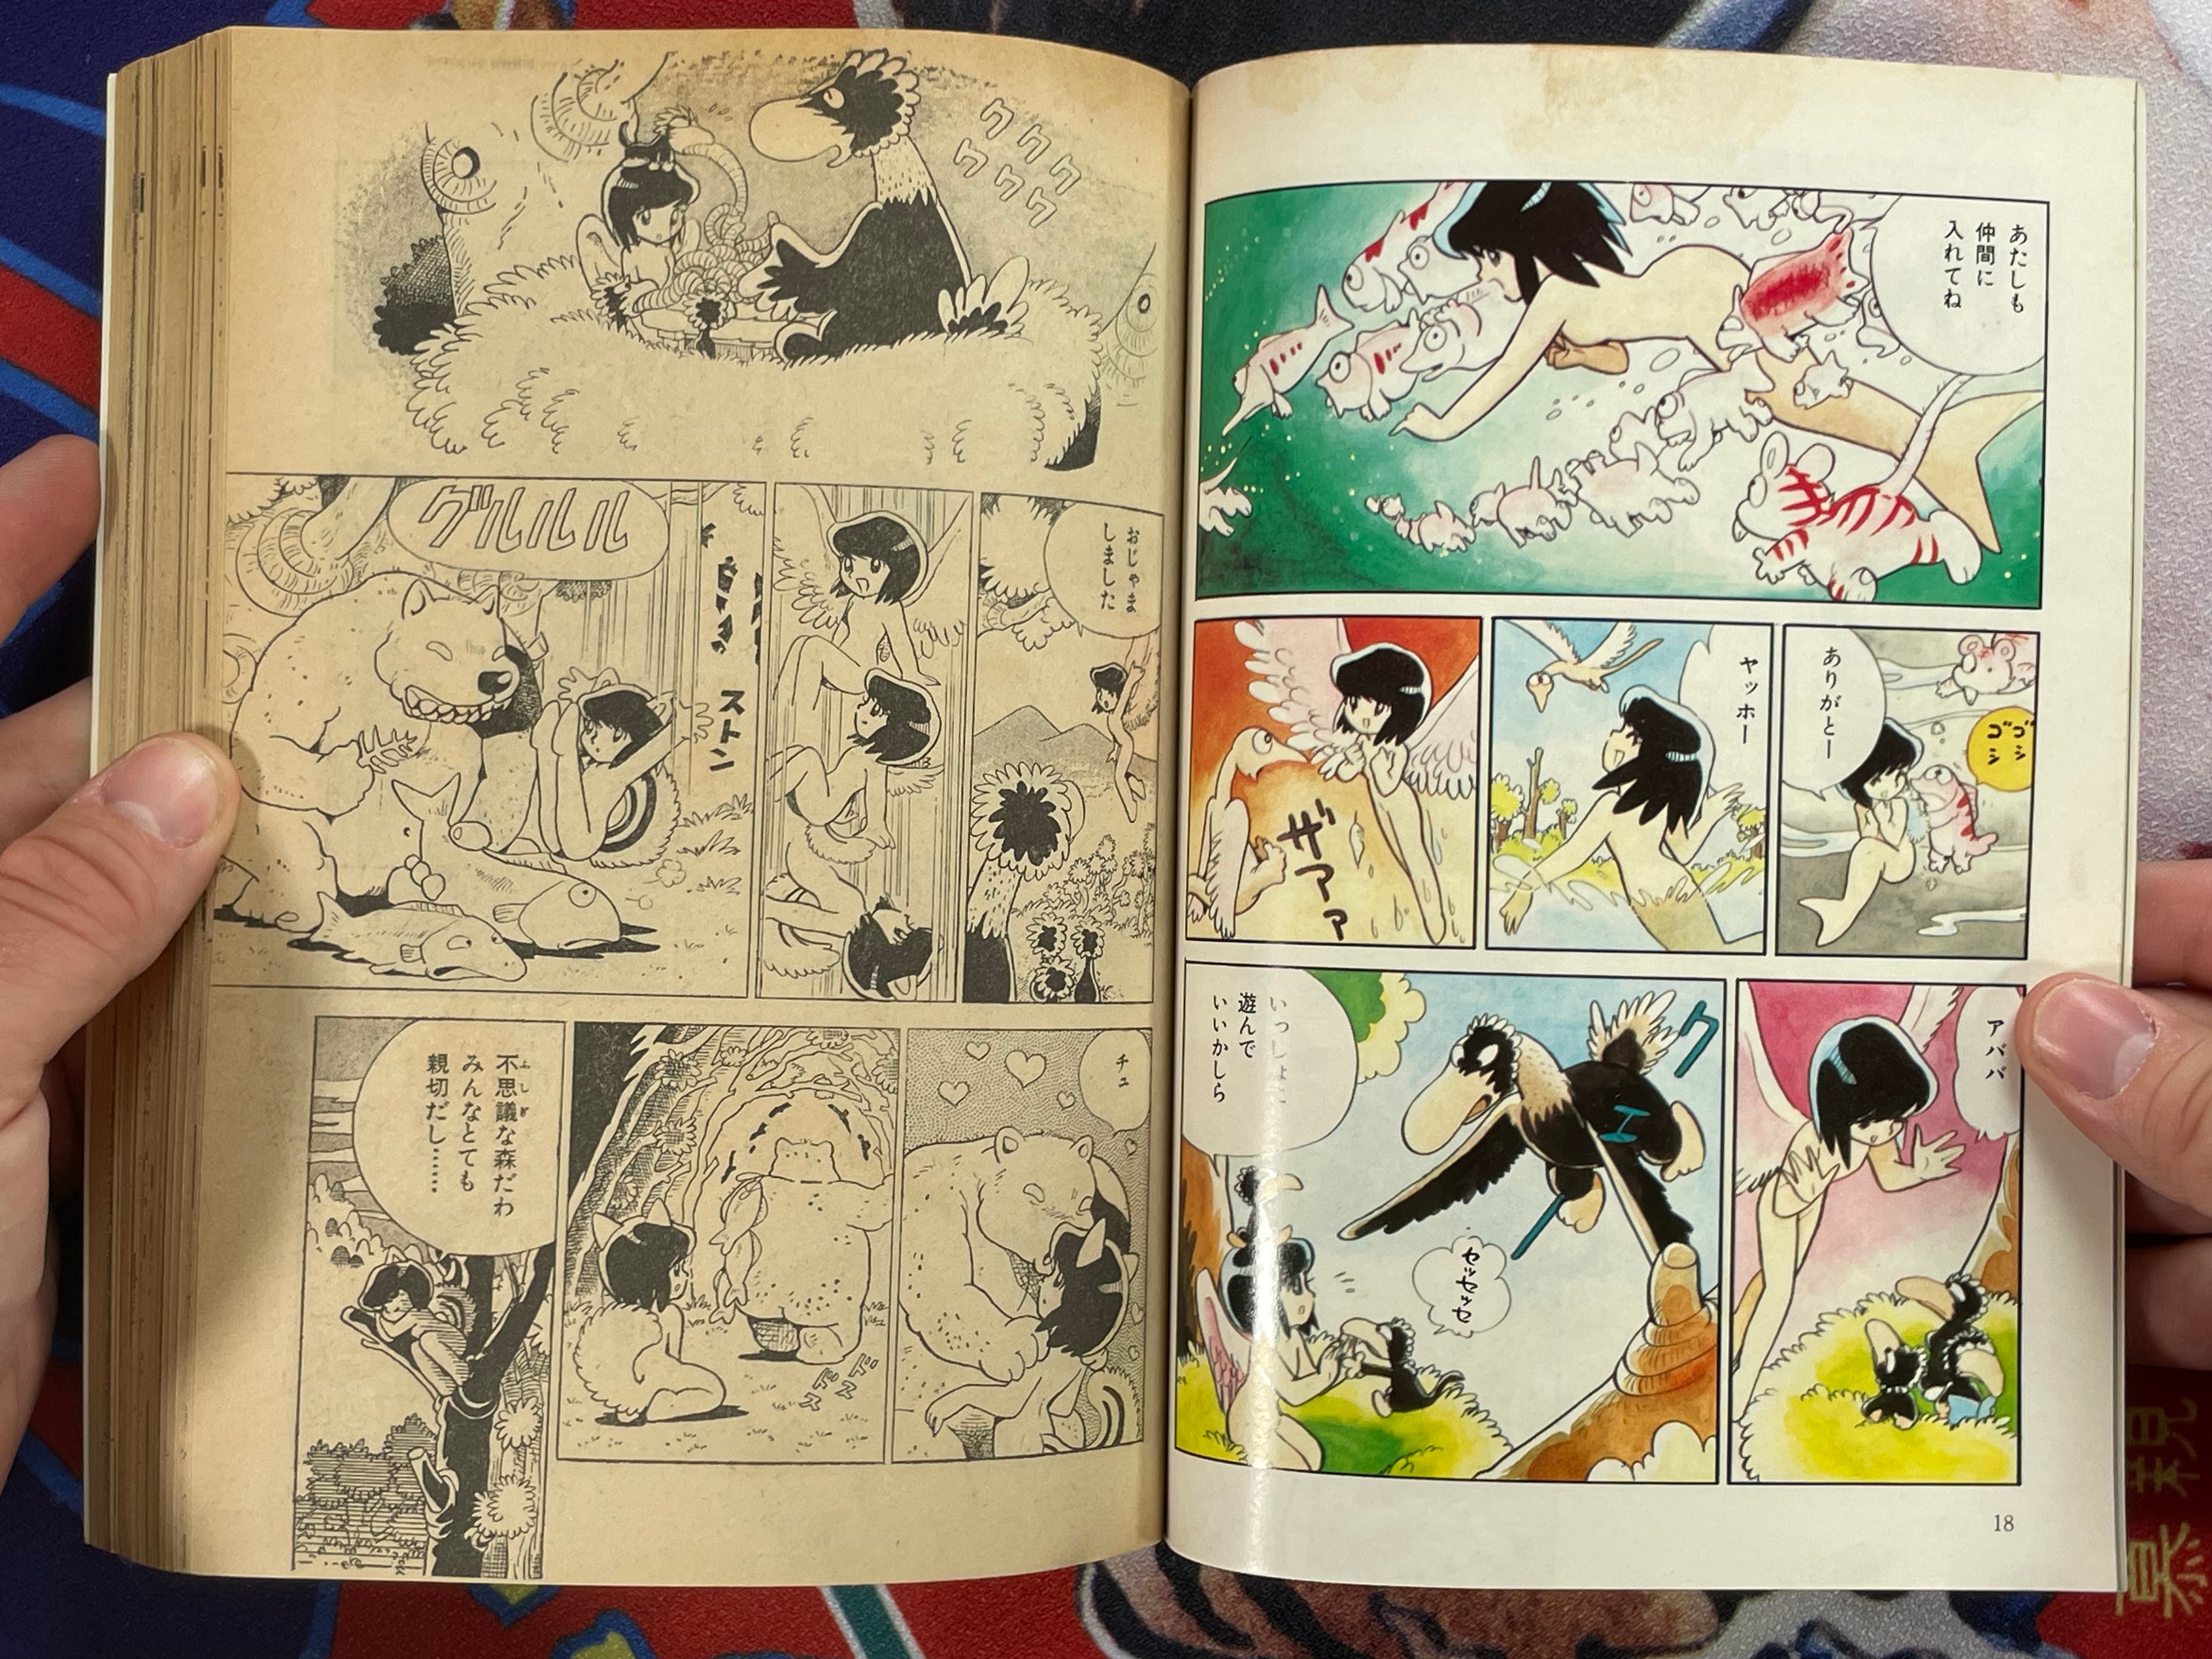 SF Manga Kyosaku Big Collection Magazine Part 8 - 11/1980